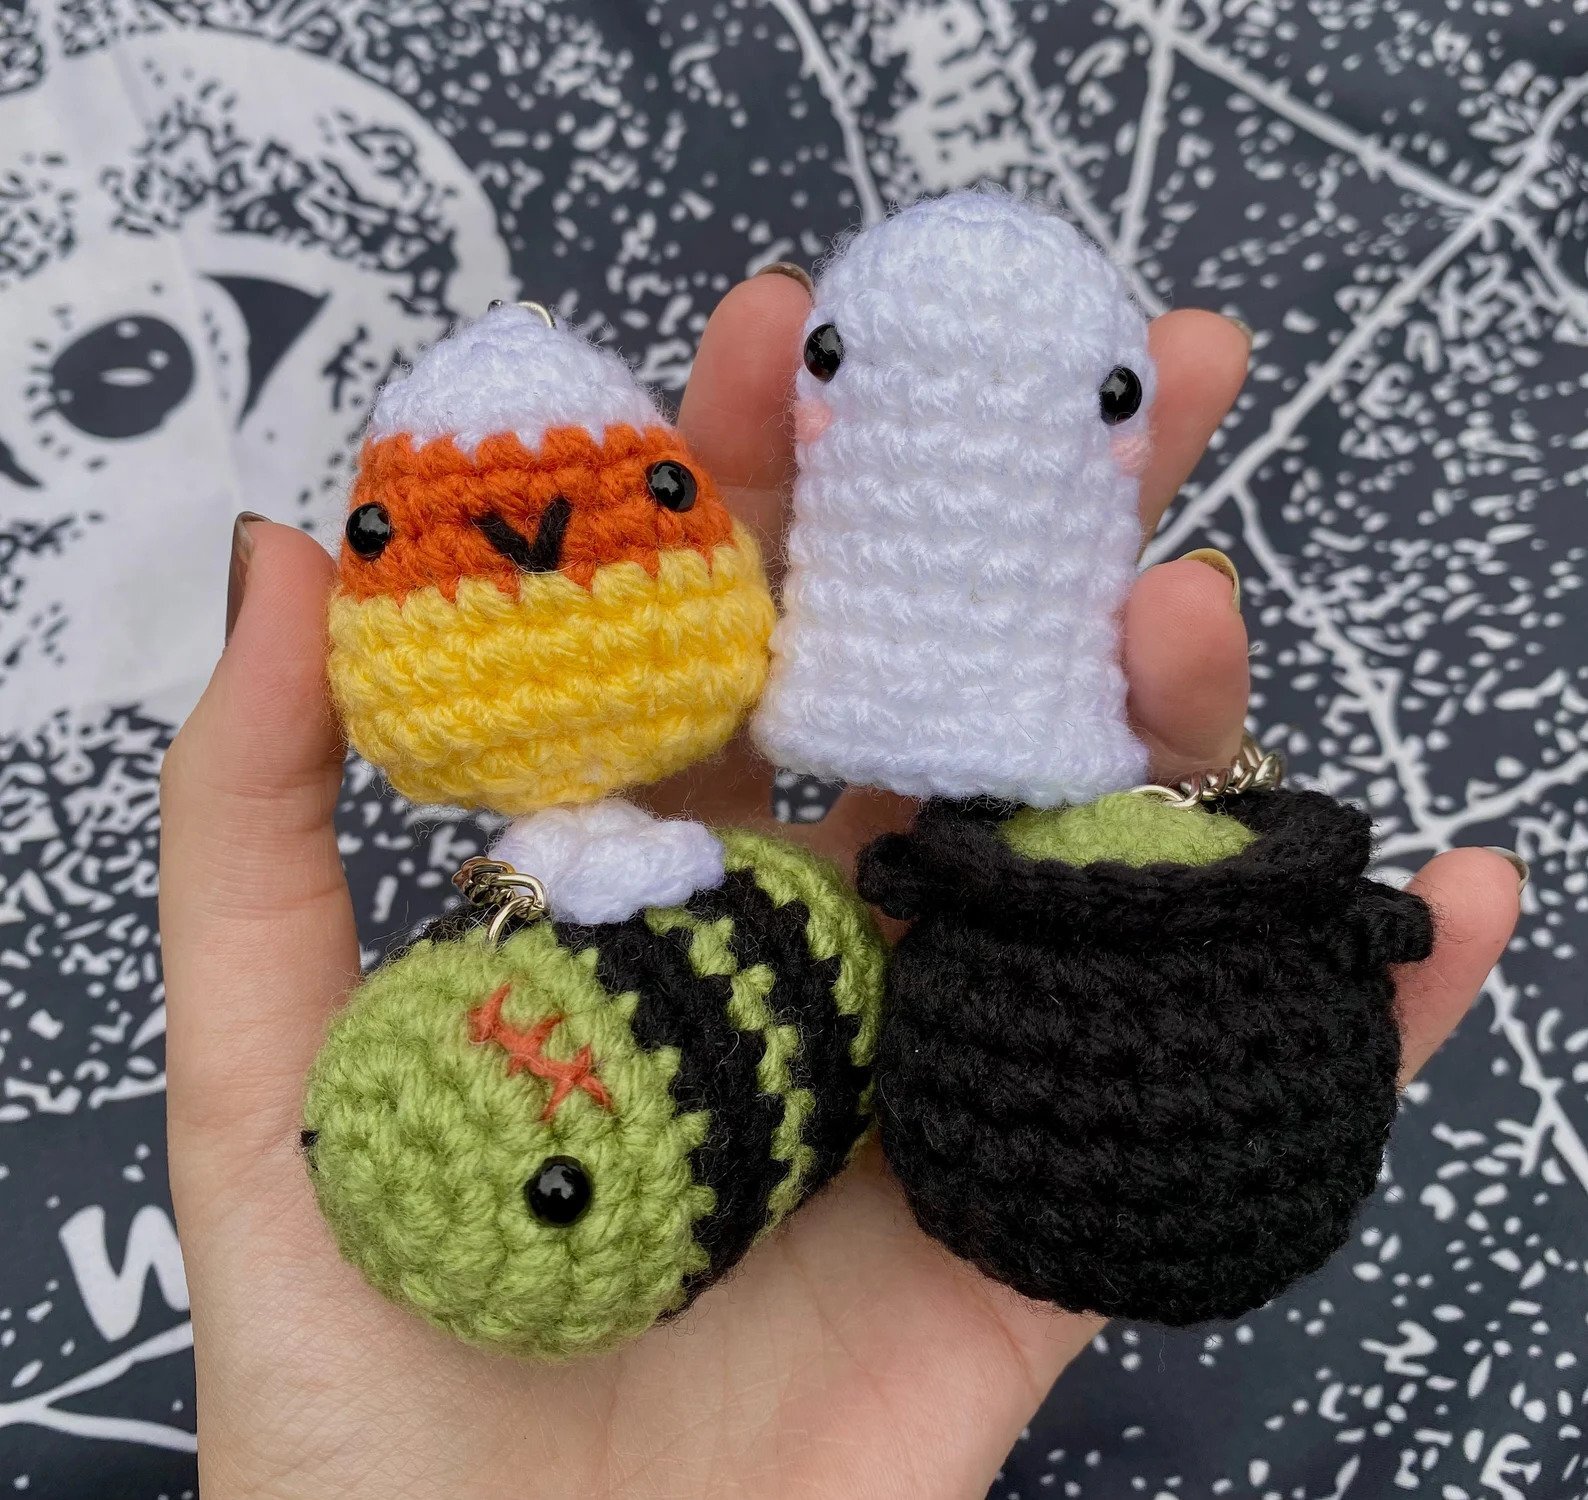 spooky crochet keychains by troissoeursatelier.jpg